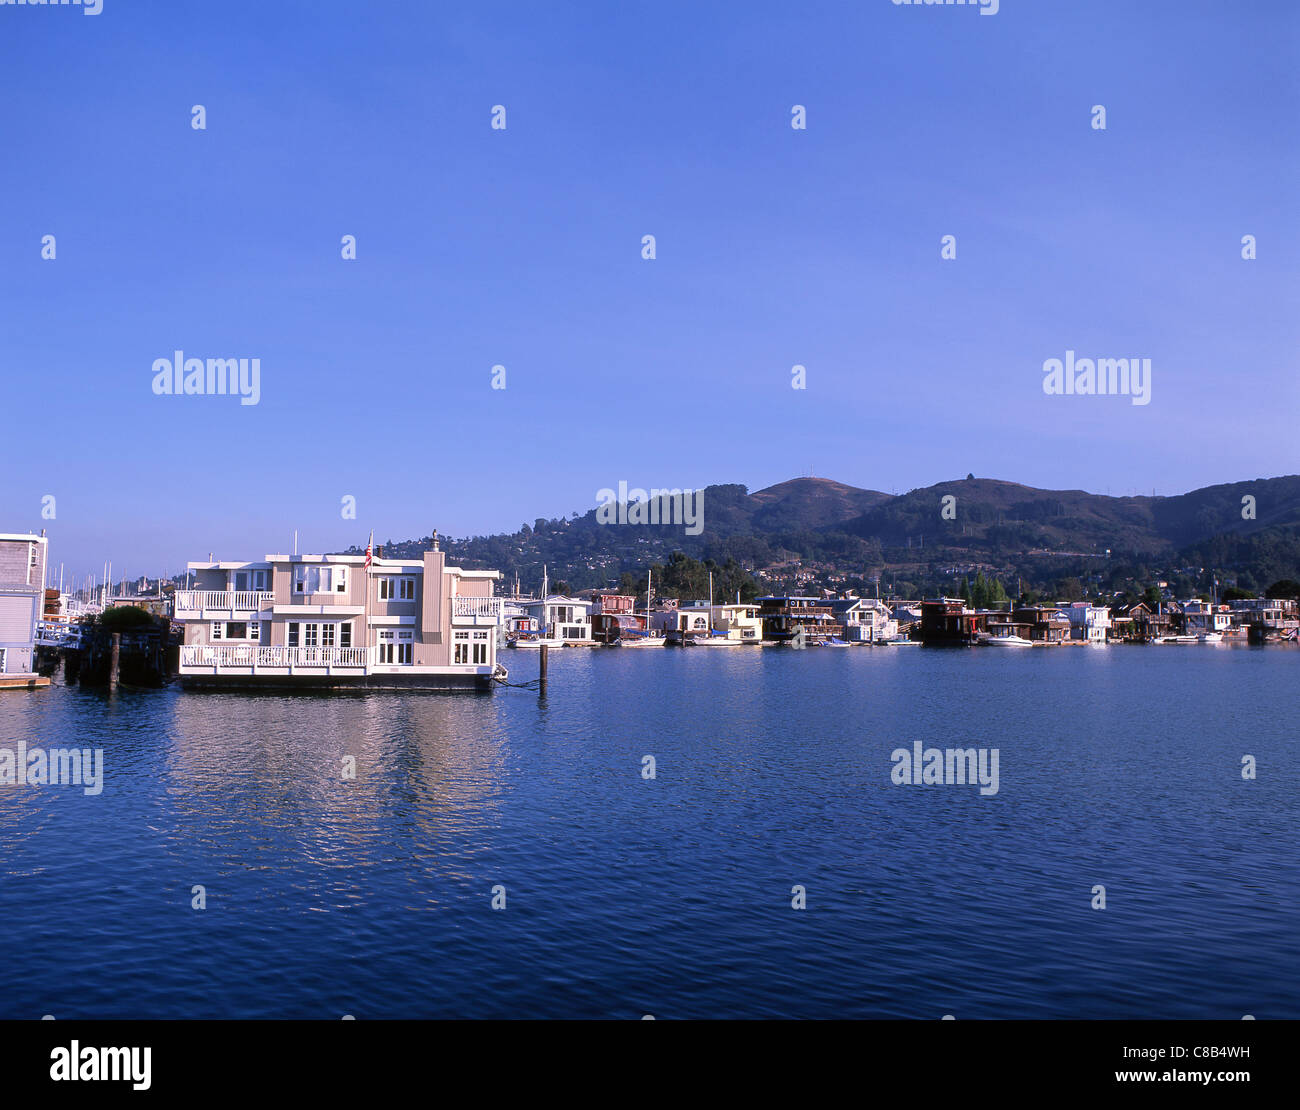 Sausalito houseboats, Waldo Point Harbor, Sausalito, San Francisco Bay Area, Marin County, California, United States of America Stock Photo